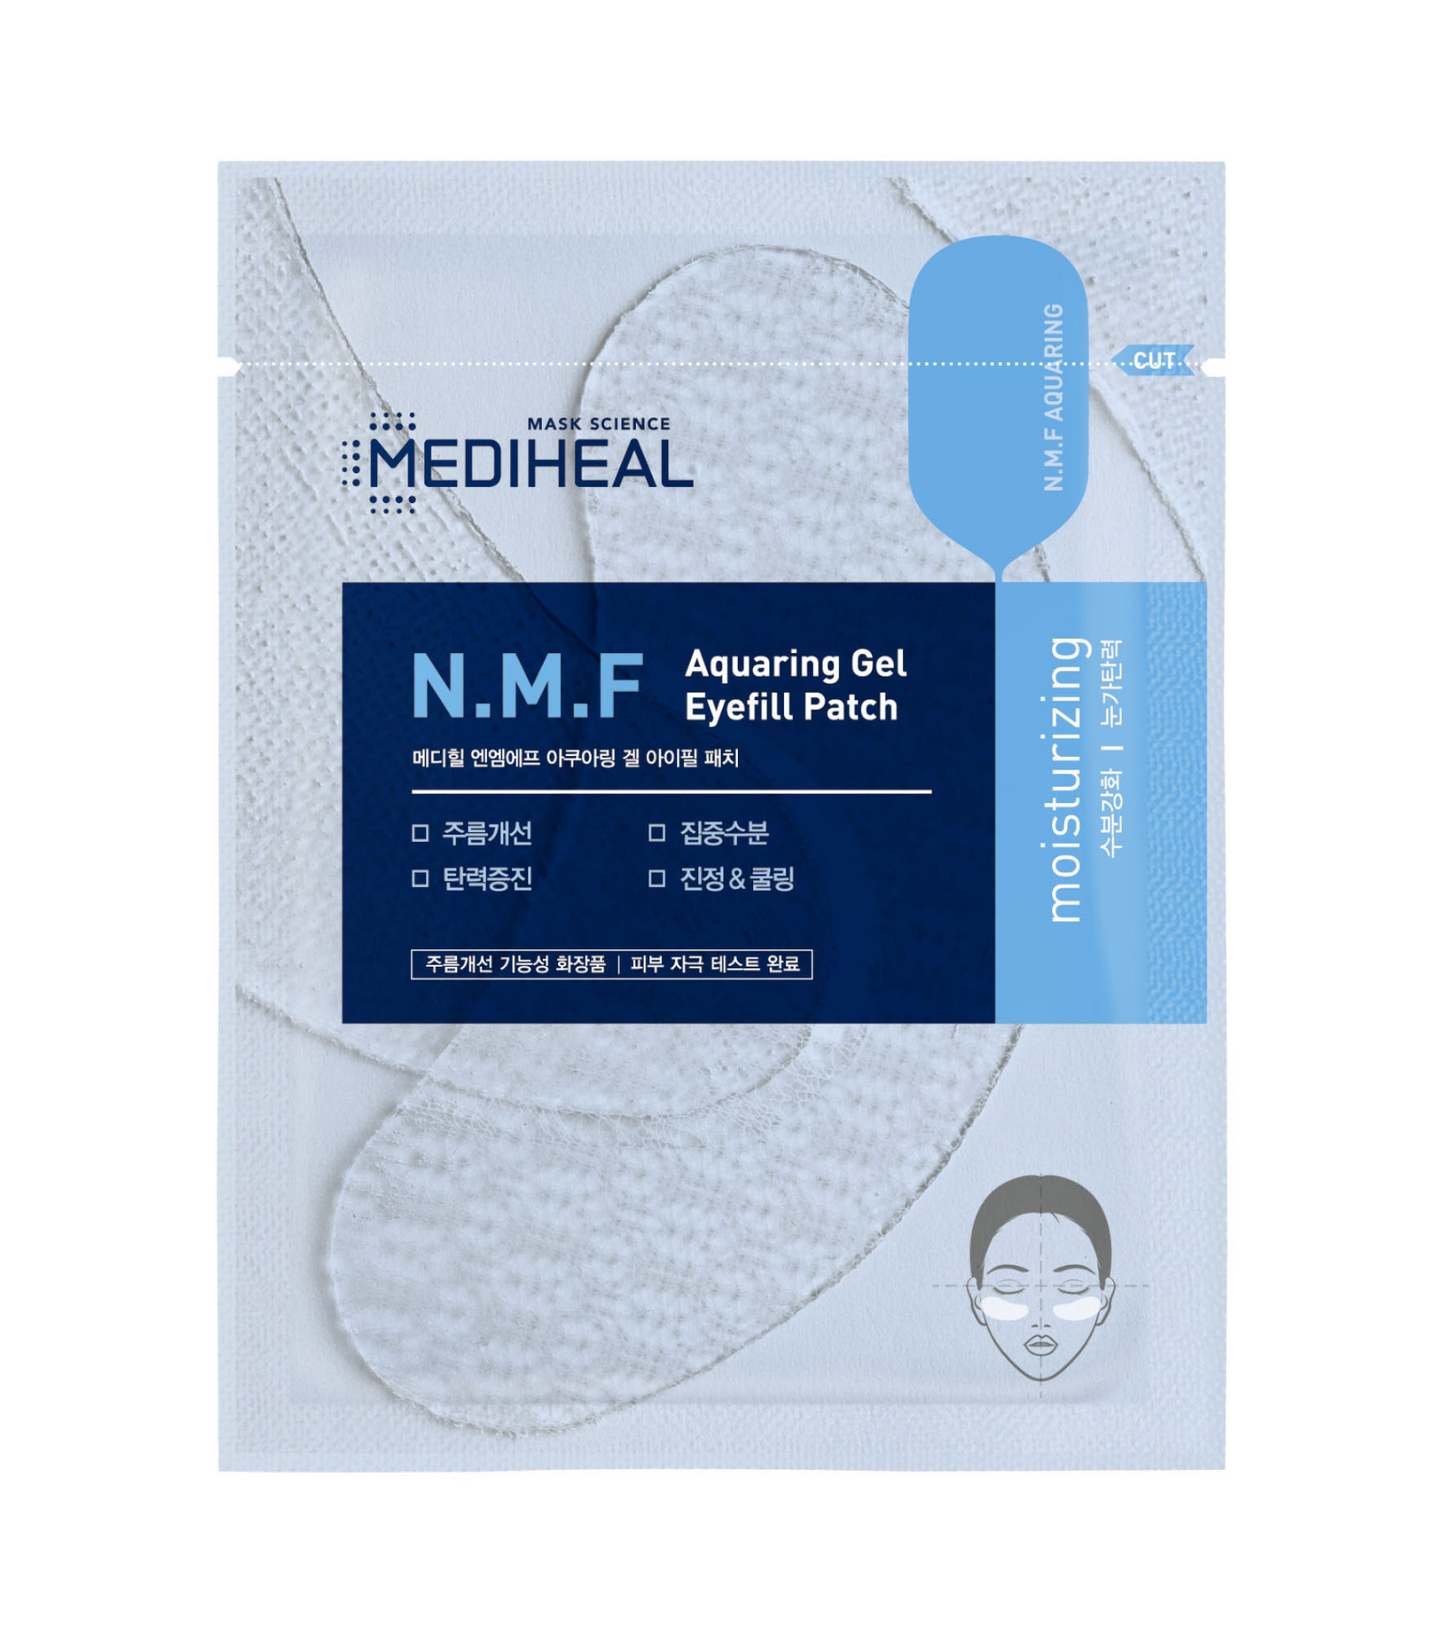 N.M.F Aquaring Gel Eyefill Patch